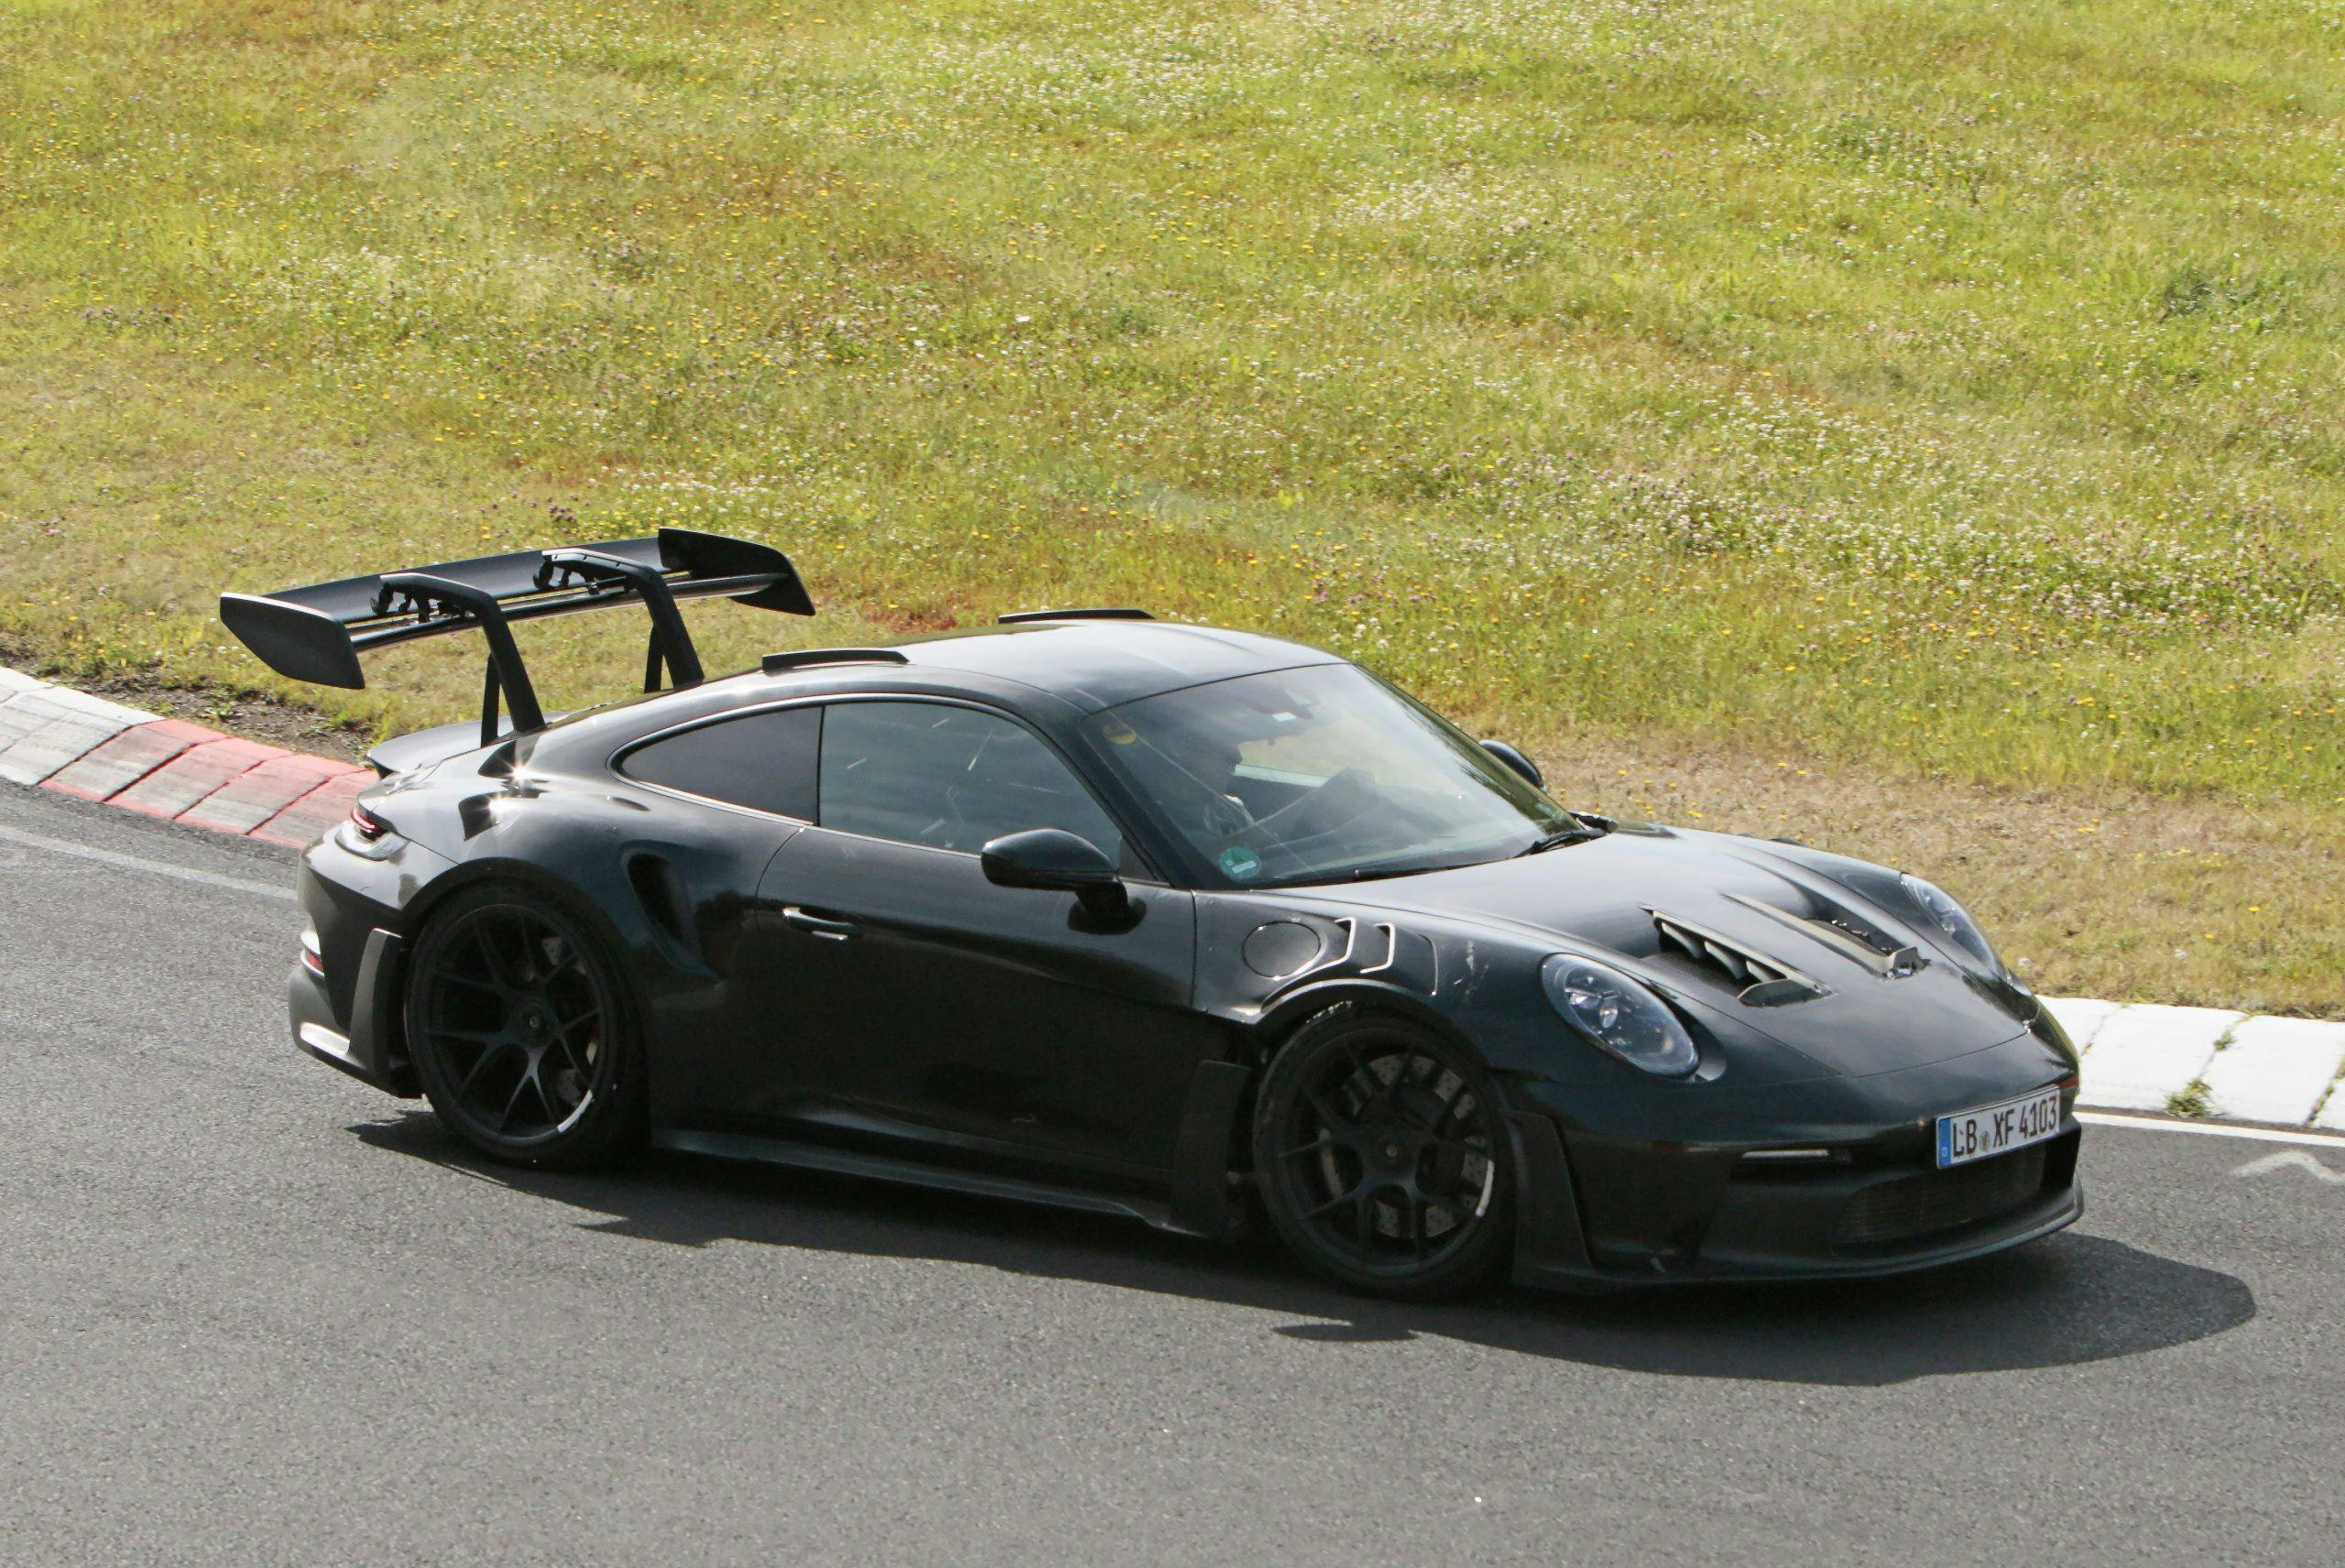 Porsche 911 GT3 RS Spy Shots exterior side profile